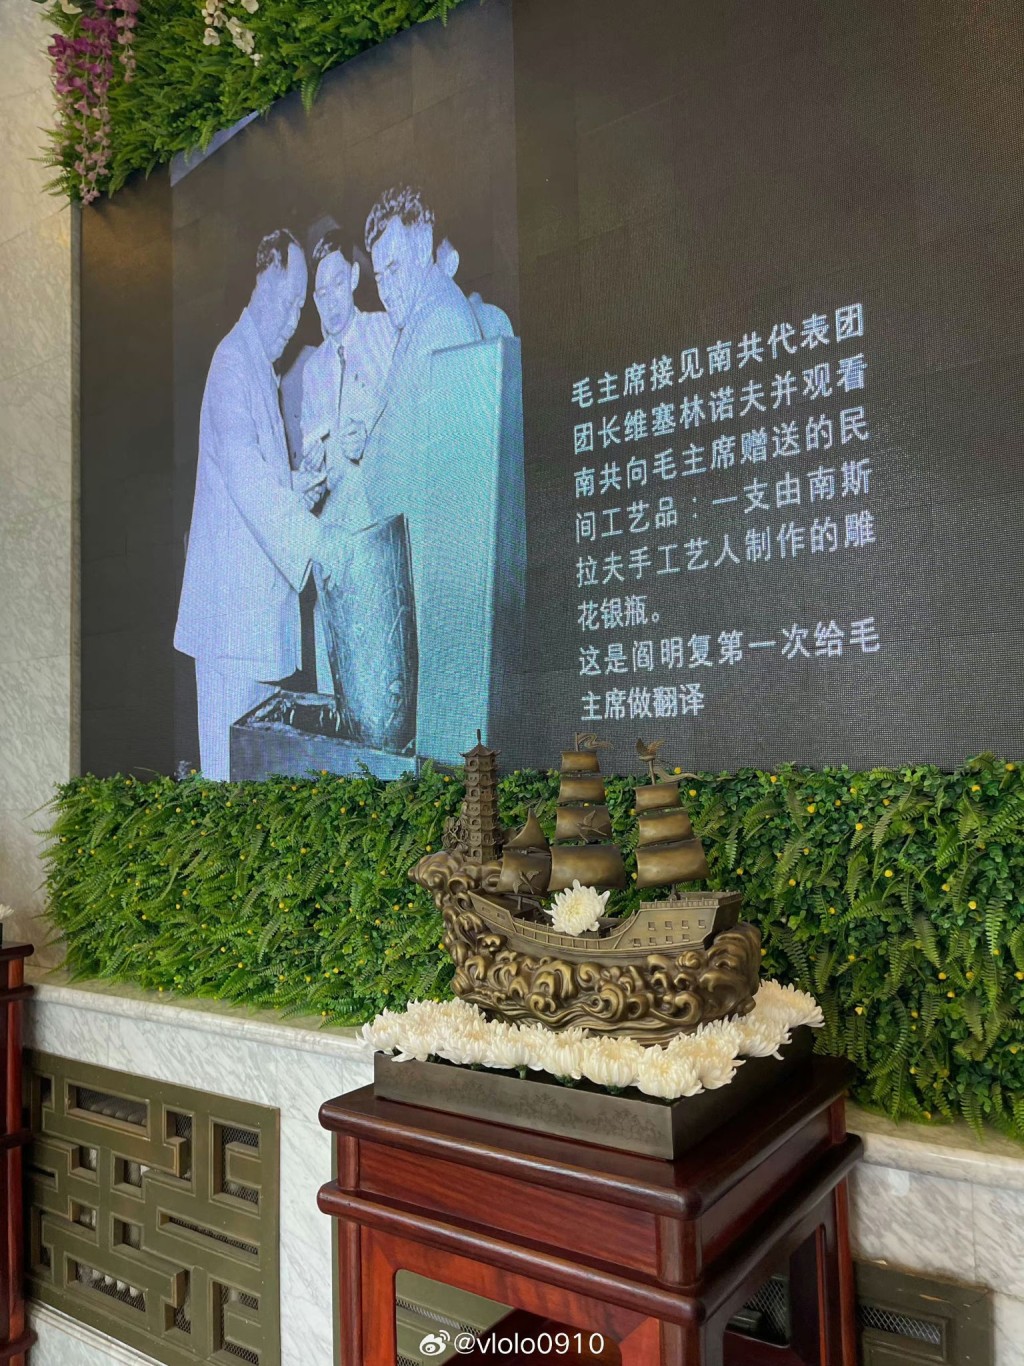 閻明復告別儀式現場提及他曾為毛澤東當翻譯。